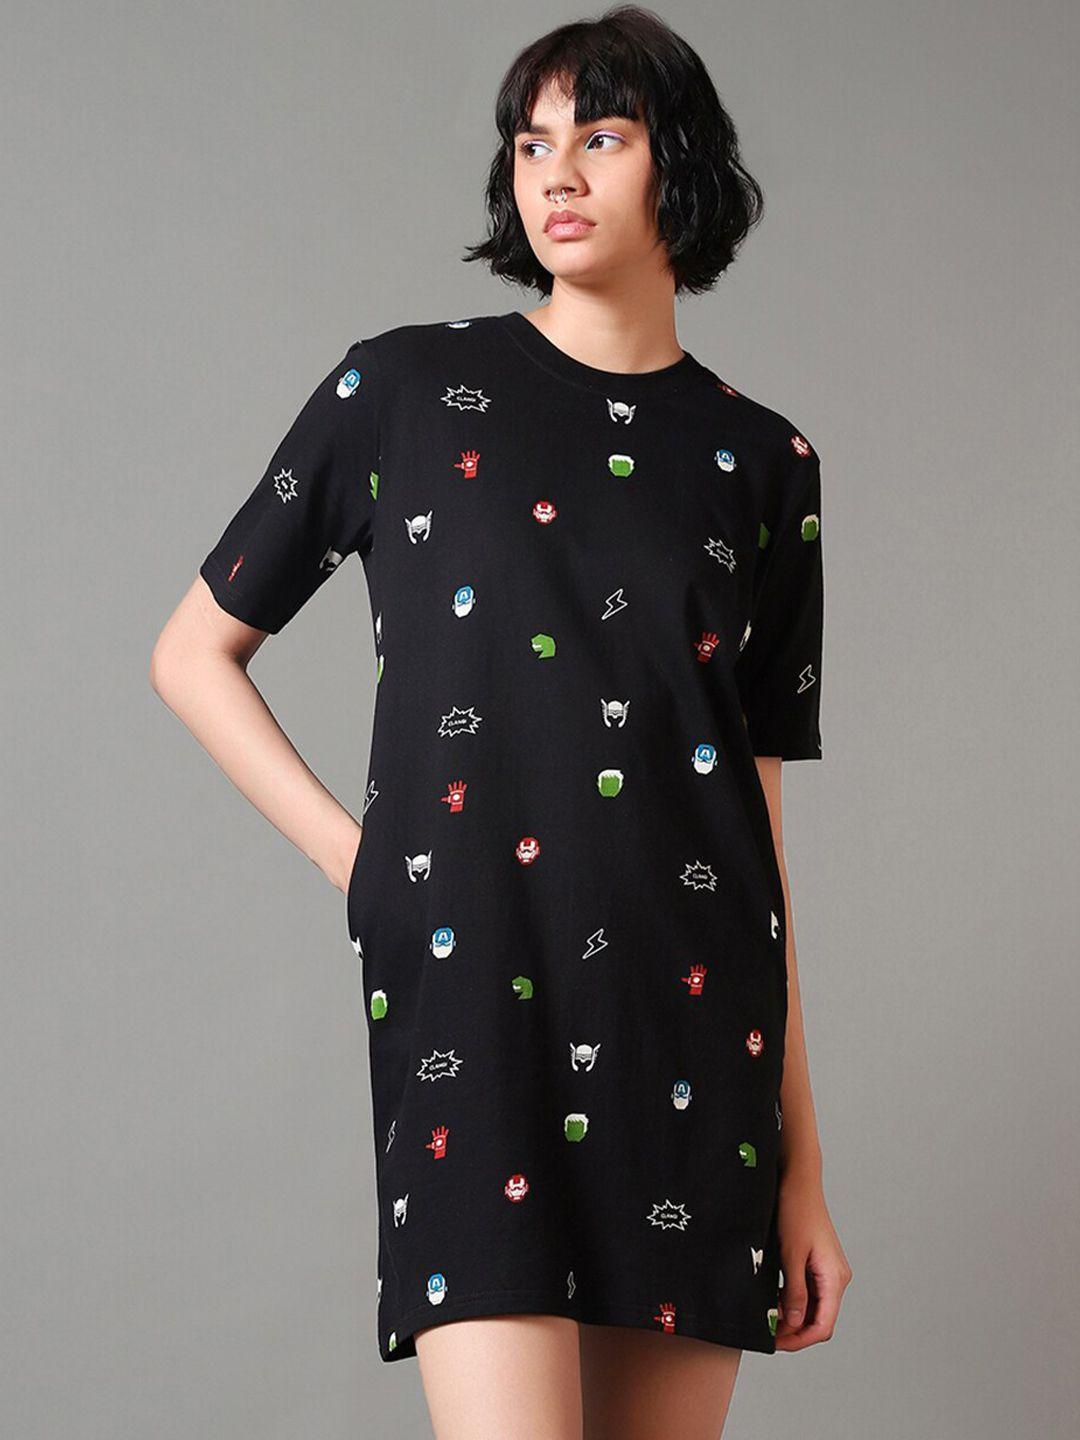 bewakoof-conversational-printed-cotton-t-shirt-dress